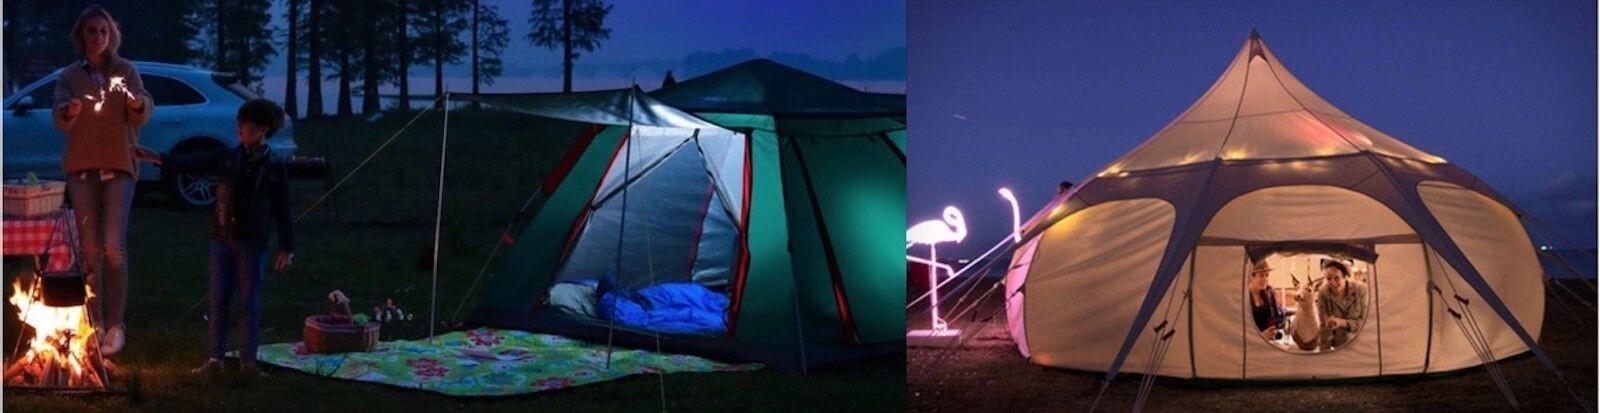 КИТАЙ самый лучший на открытом воздухе располагаясь лагерем шатры на сбываниях